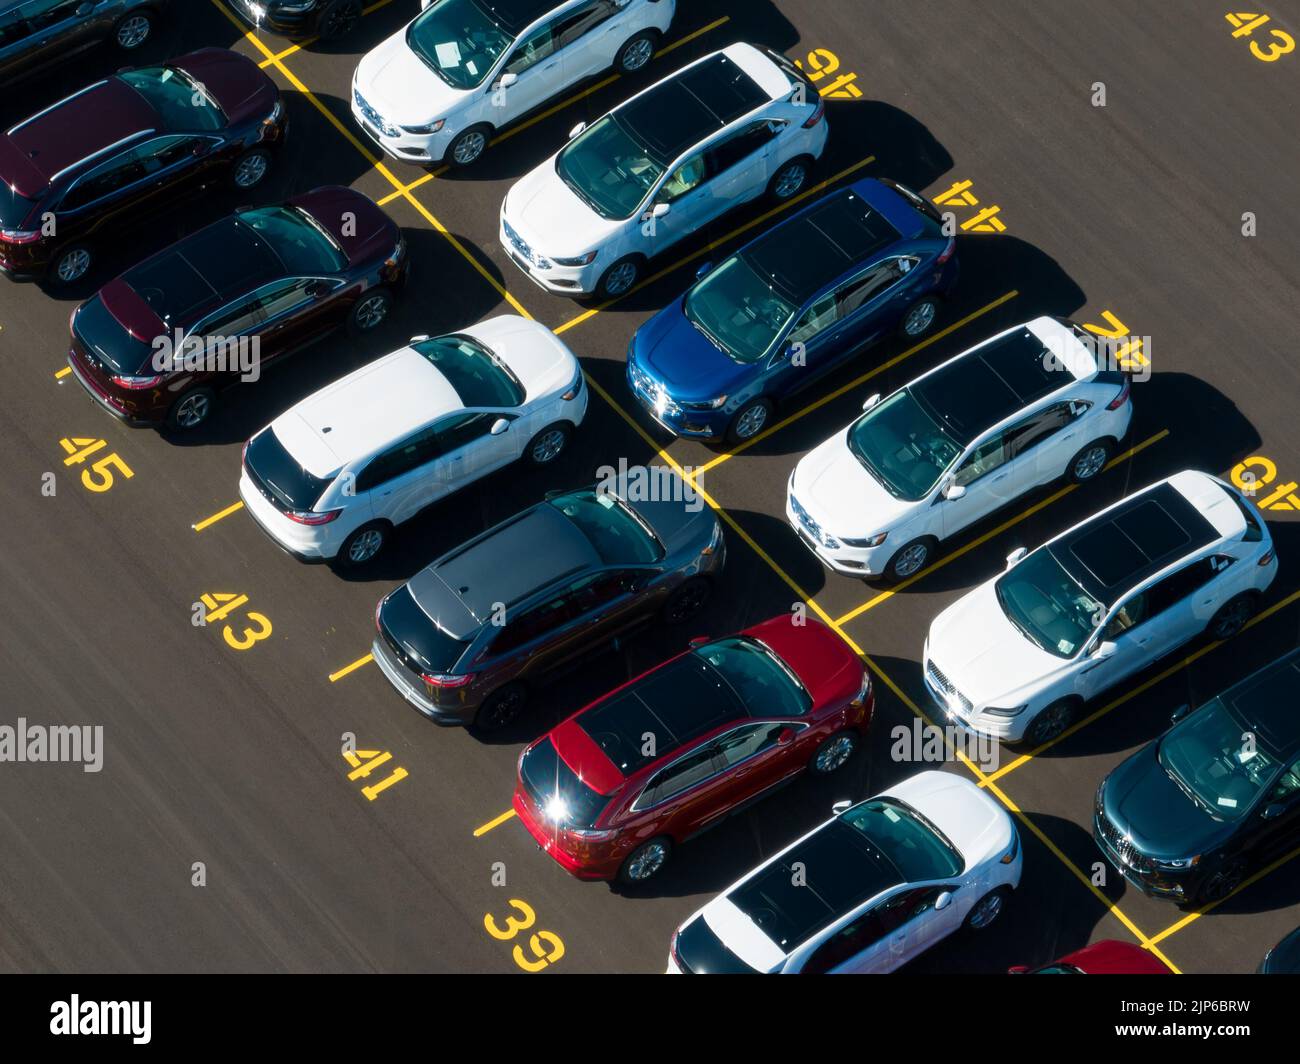 Una vista aérea sobre un estacionamiento en una planta de Ford Motor Company. Las filas de los SUVs recientemente fabricados del borde de Ford se ven en un día soleado. Foto de stock